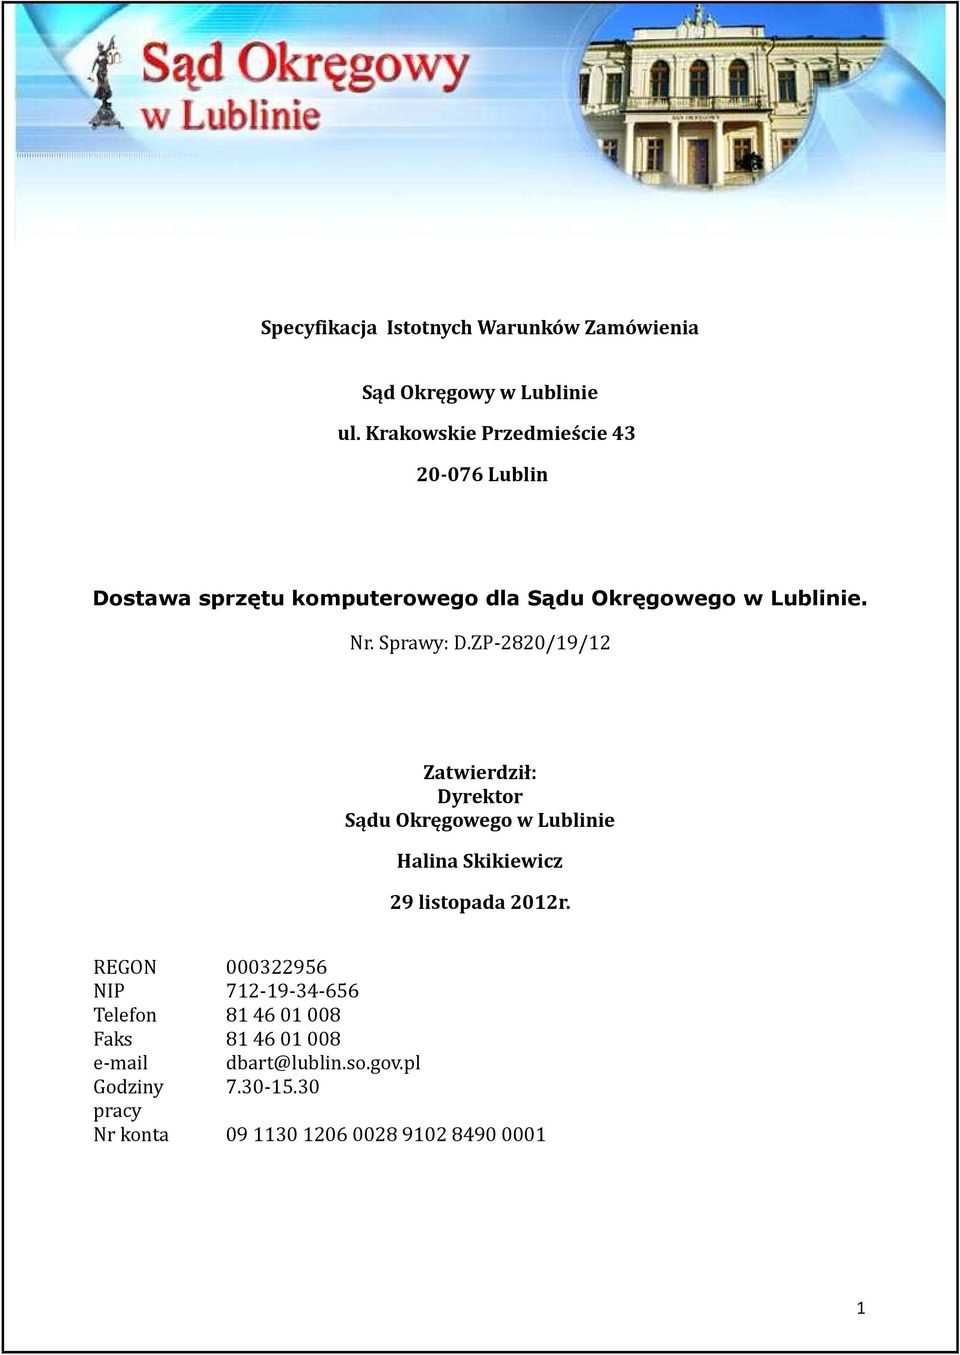 Sprawy: D.ZP-2820/19/12 Zatwierdził: Dyrektor Sądu Okręgowego w Lublinie Halina Skikiewicz 29 listopada 2012r.